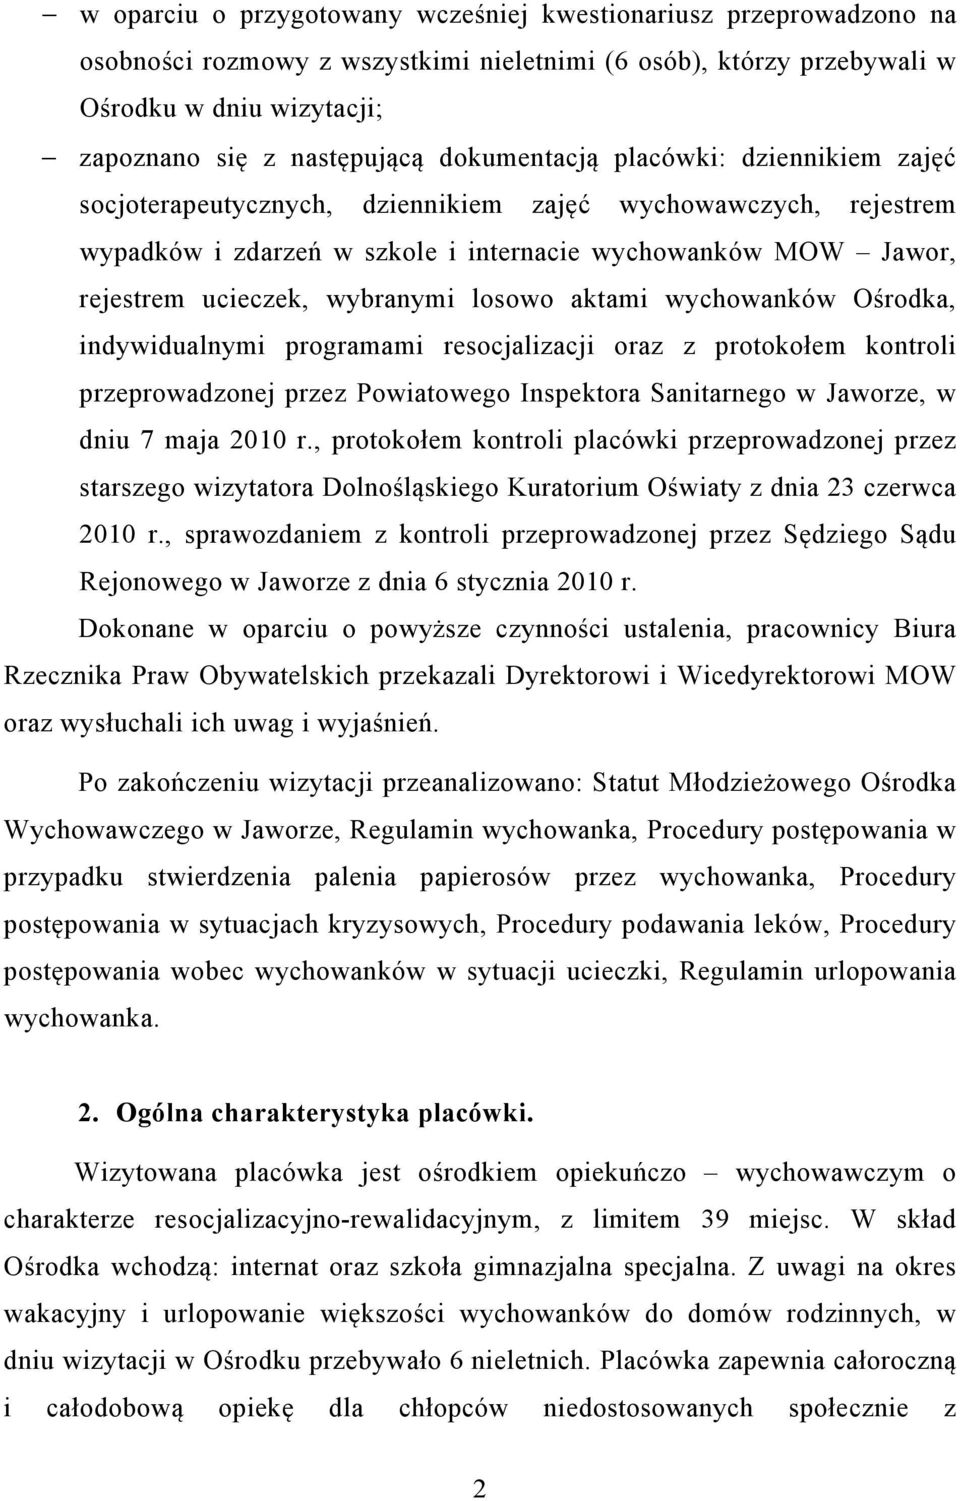 losowo aktami wychowanków Ośrodka, indywidualnymi programami resocjalizacji oraz z protokołem kontroli przeprowadzonej przez Powiatowego Inspektora Sanitarnego w Jaworze, w dniu 7 maja 2010 r.